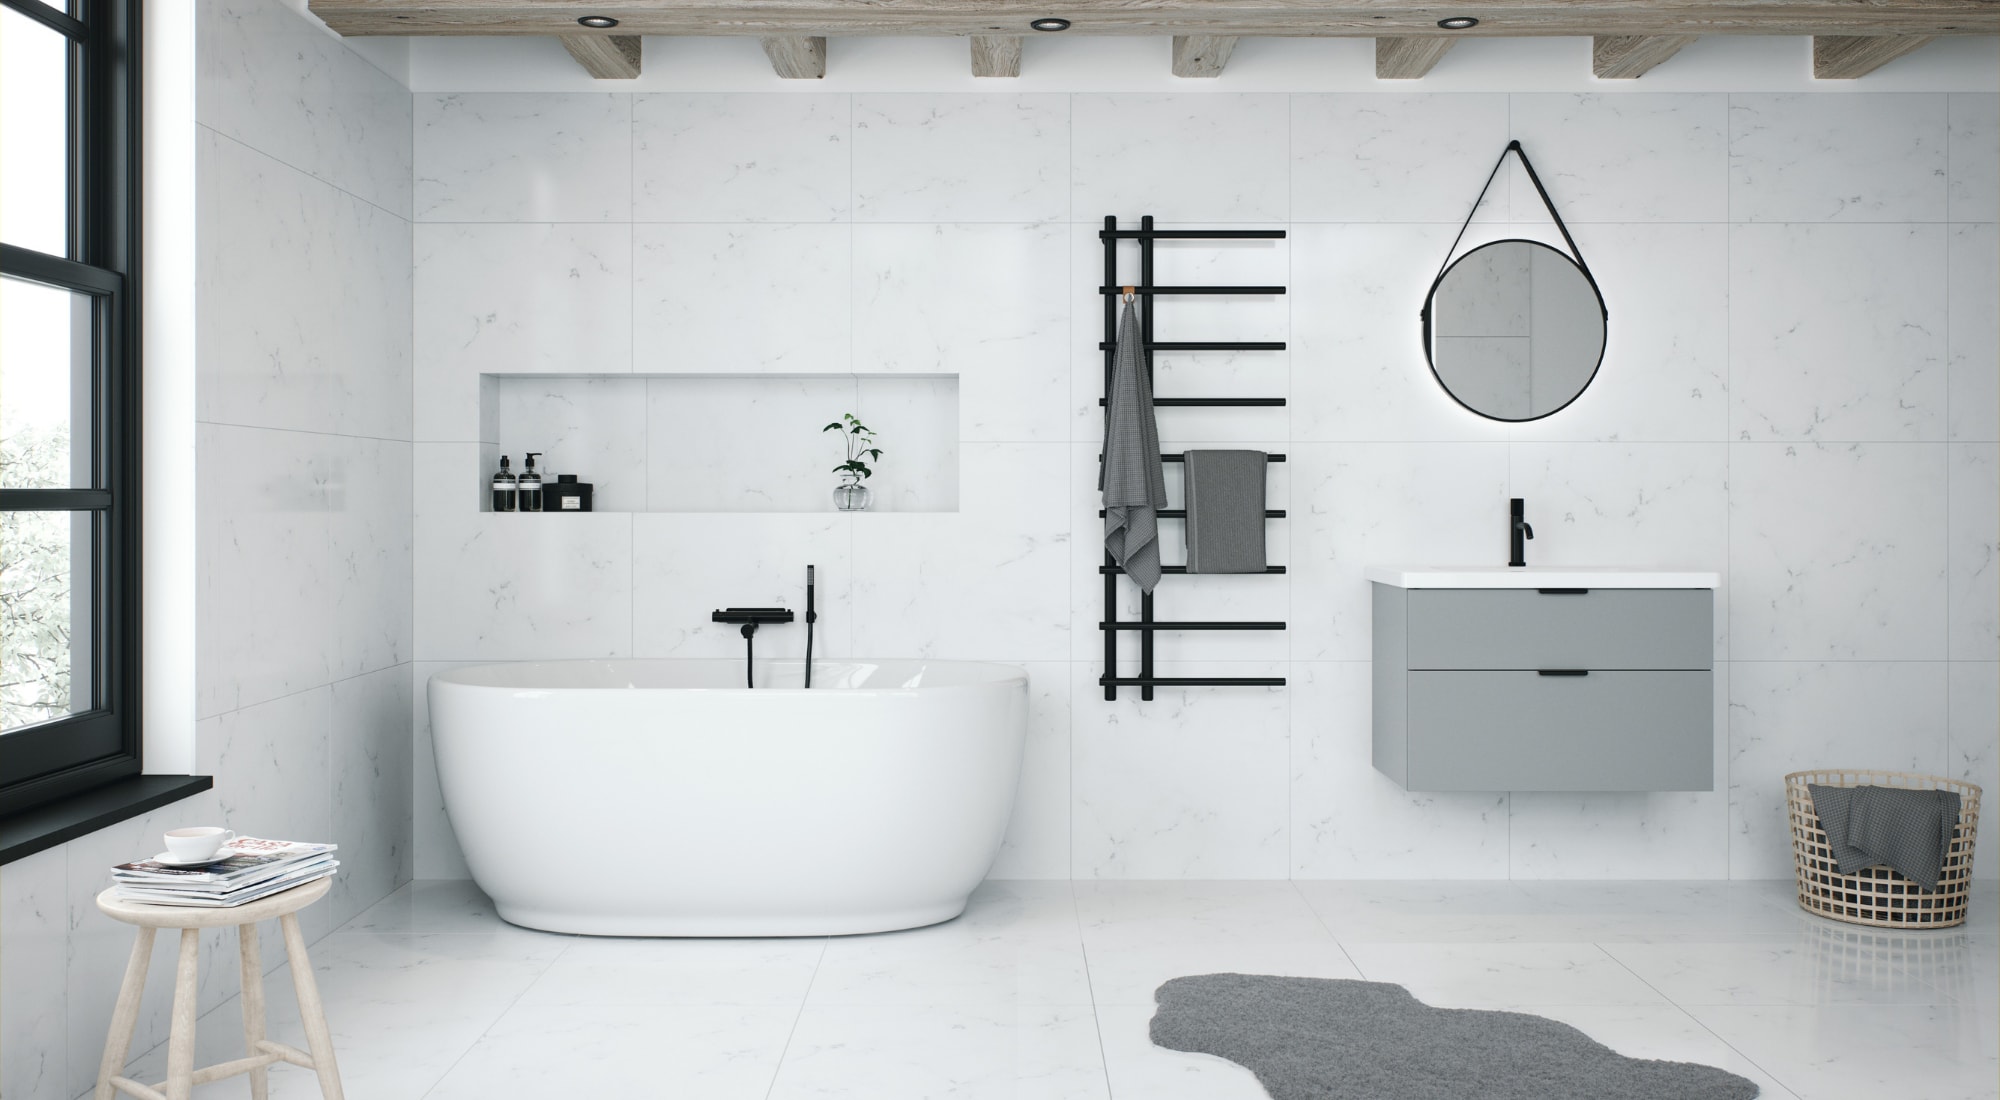 vitt marmor kakel badrum med fristående badkar, grå badrumskommod, rund badrumsspegel och mattsvart handdukstork